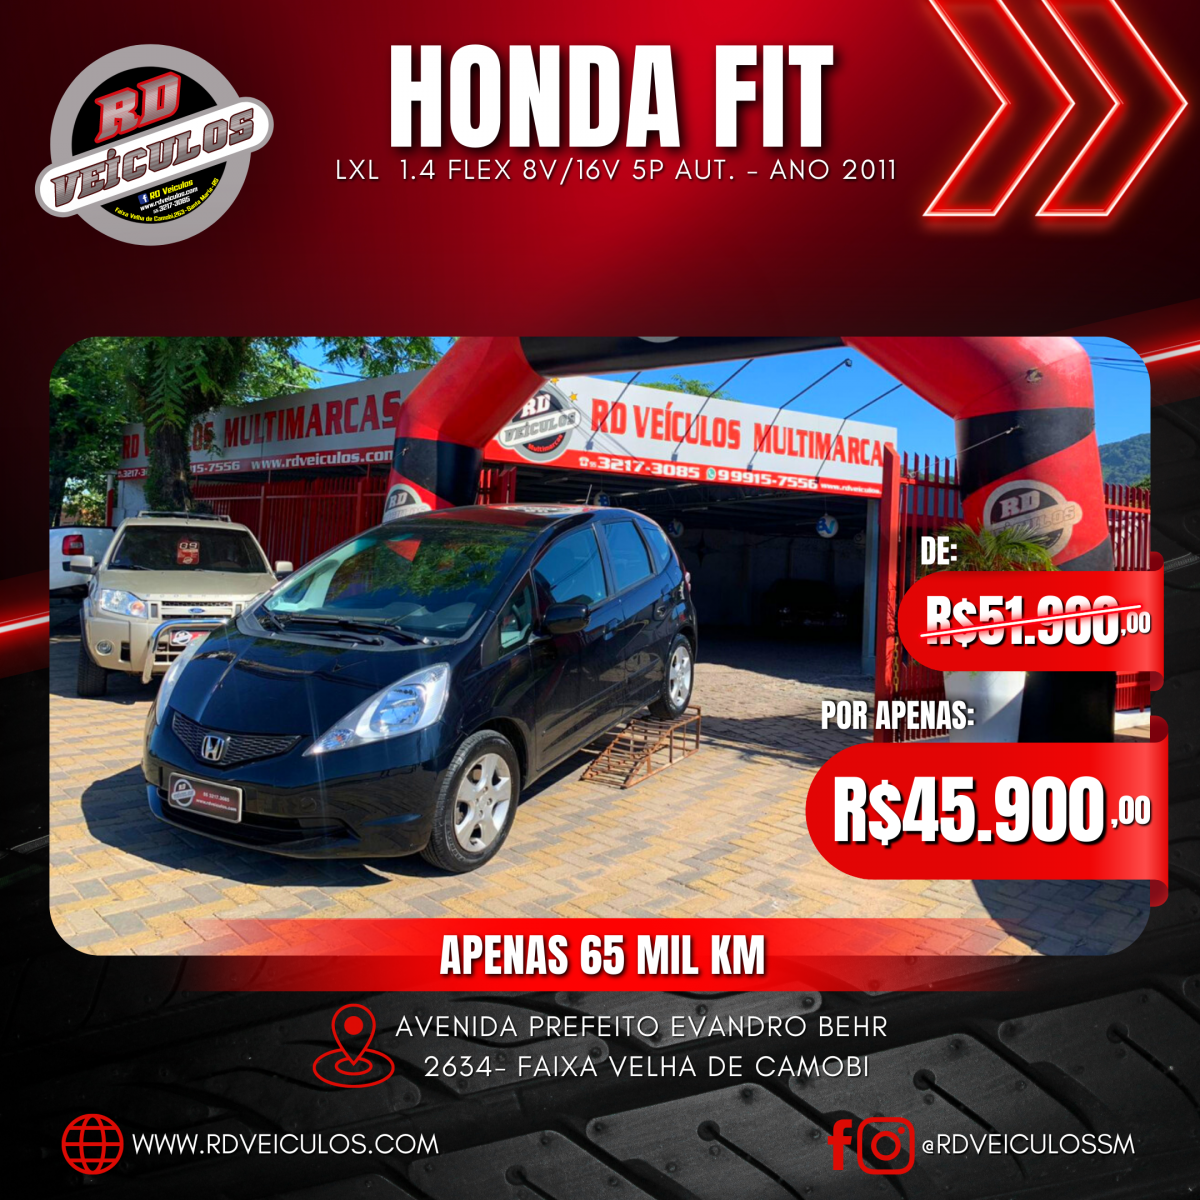 Fit LXL 1.4/ 1.4 Flex 8V/16V 5p Aut. - Honda - 2011 - R$ 45.900,00